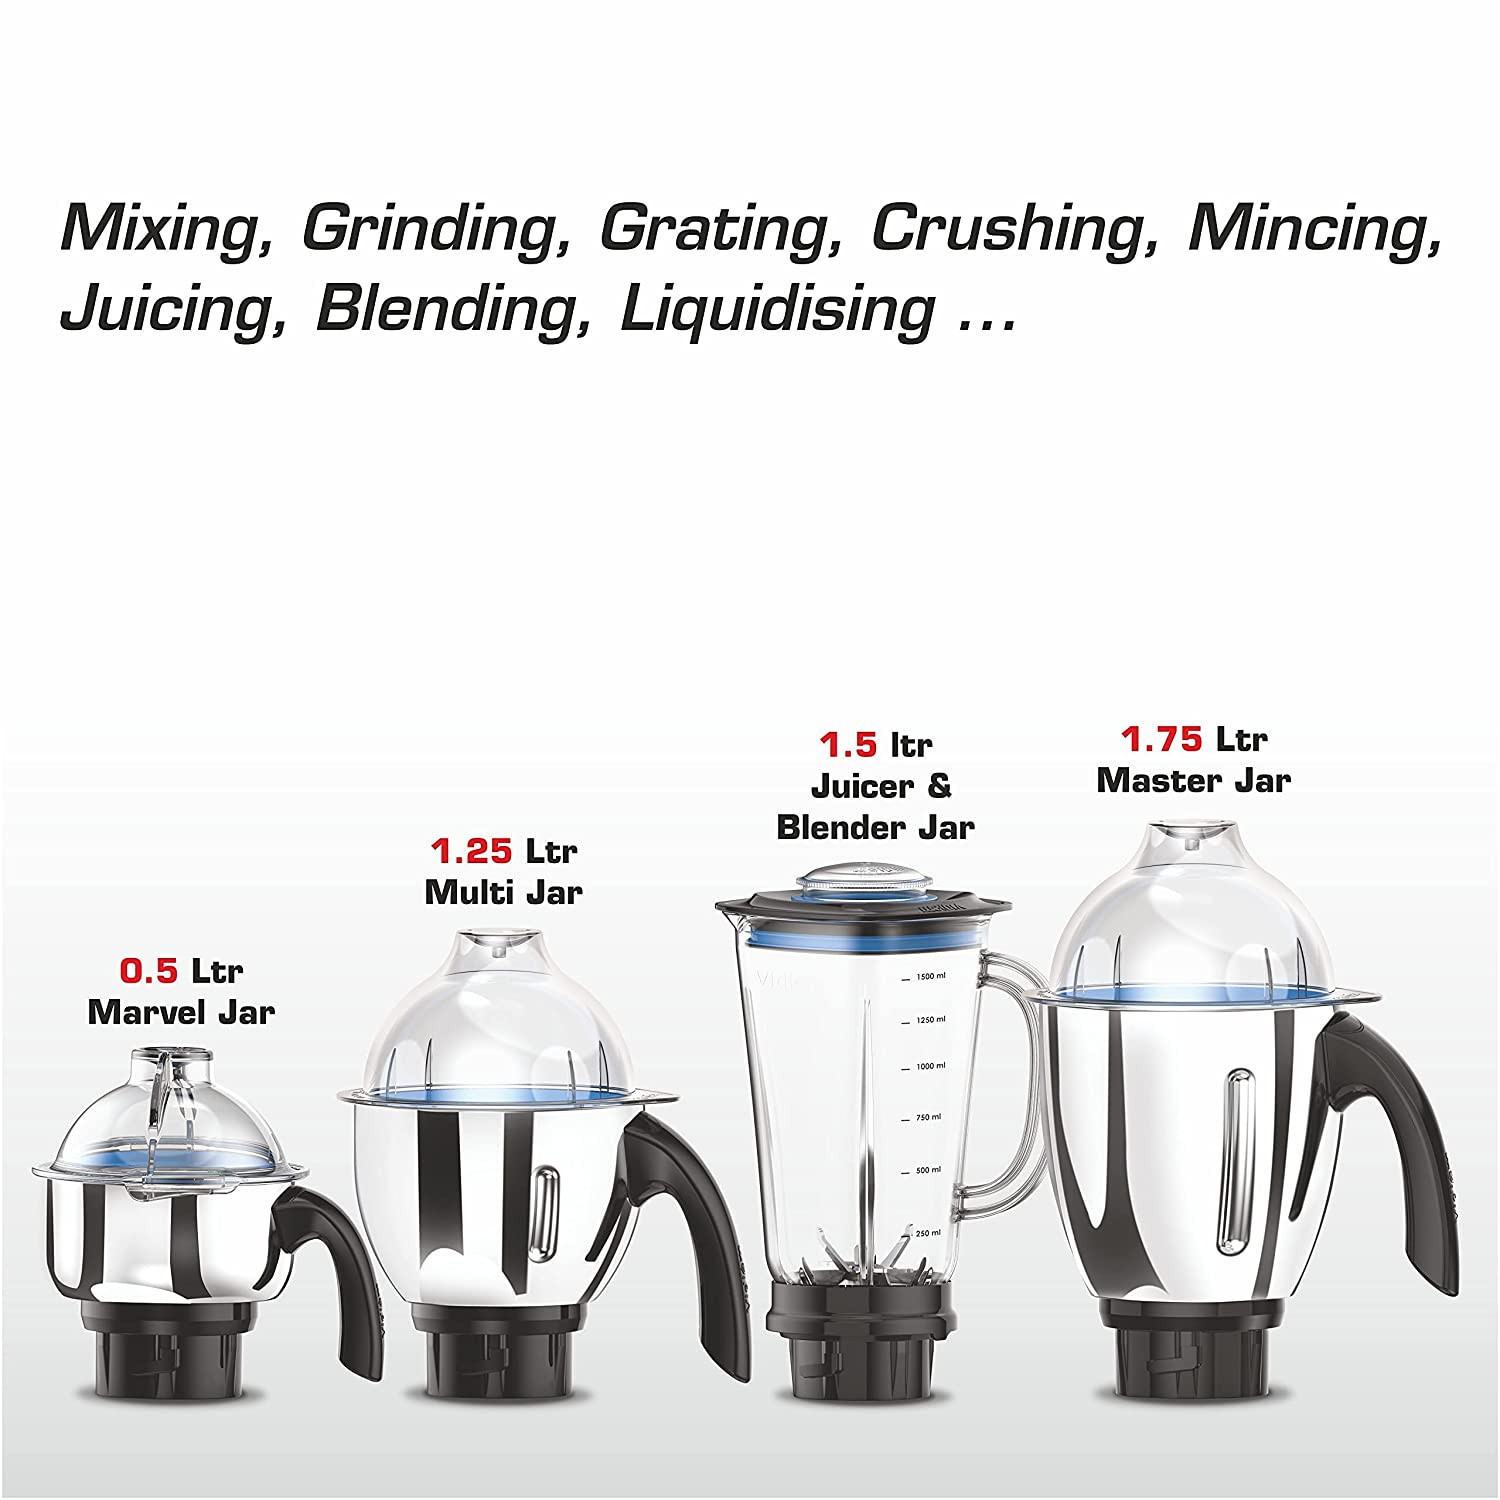 vidiem-tusker-indian-mixer-grinder-blender-food-processor-750w-110v-5-ss-jars-adjustable-vegetable-cutter-dicing-feature-almond-milk-juicer-spice-coffee-grinder-for-usa-canada7